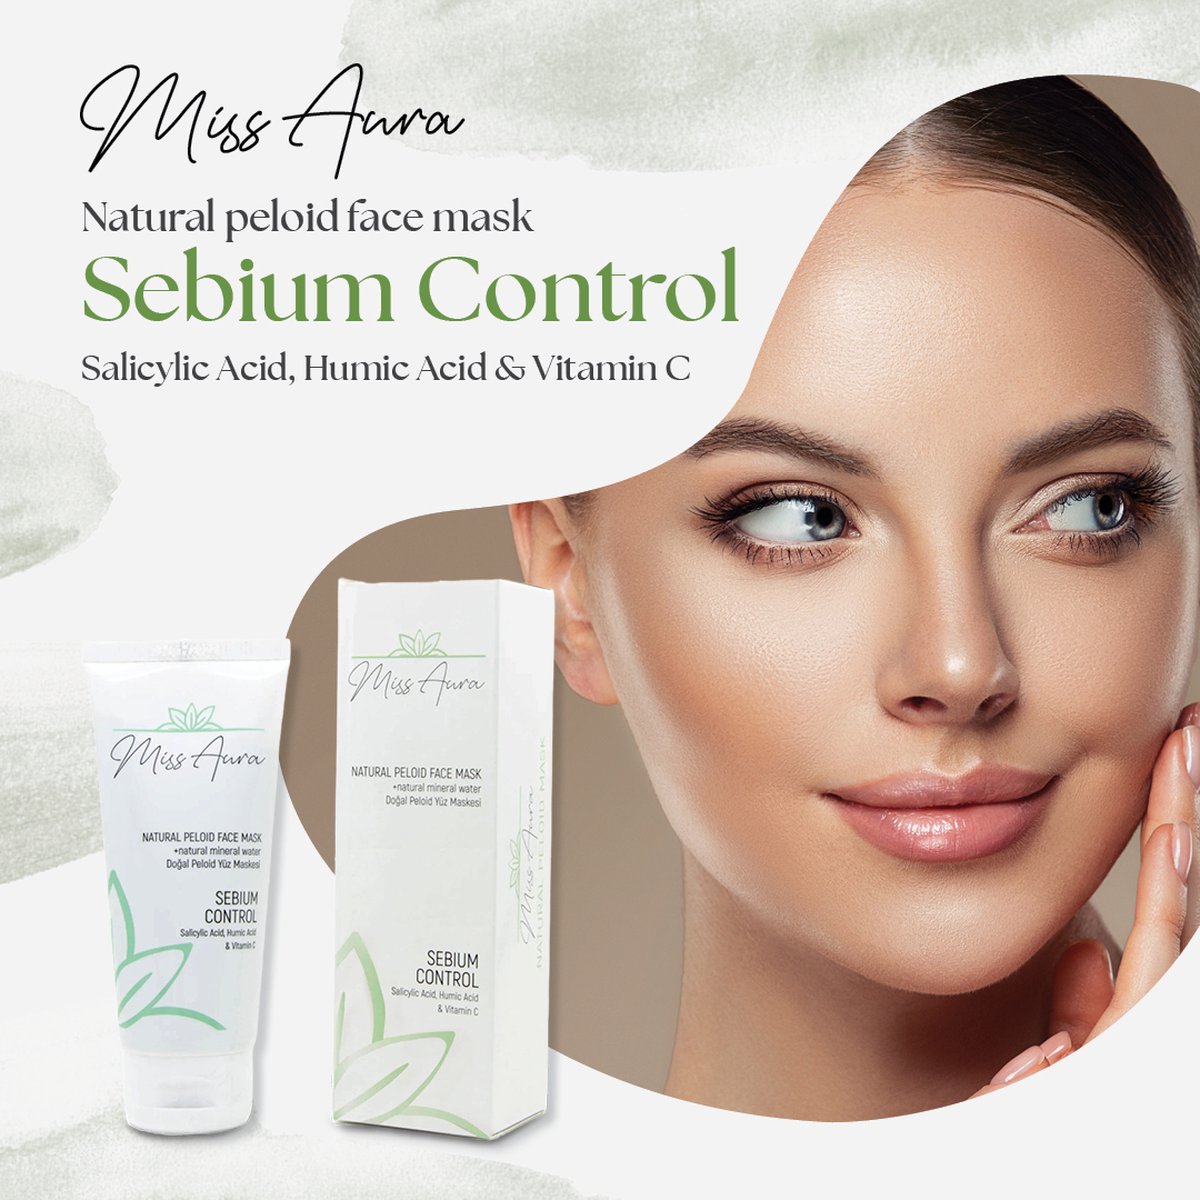 Miss Aura - Sebium Control - vettig huid masker -natuurlijk peloid gezichtsmasker - Acne masker - Mee-eters masker - modder masker - gezichtsmasker - detox masker - Facial Detox Purifying Recovery Mask